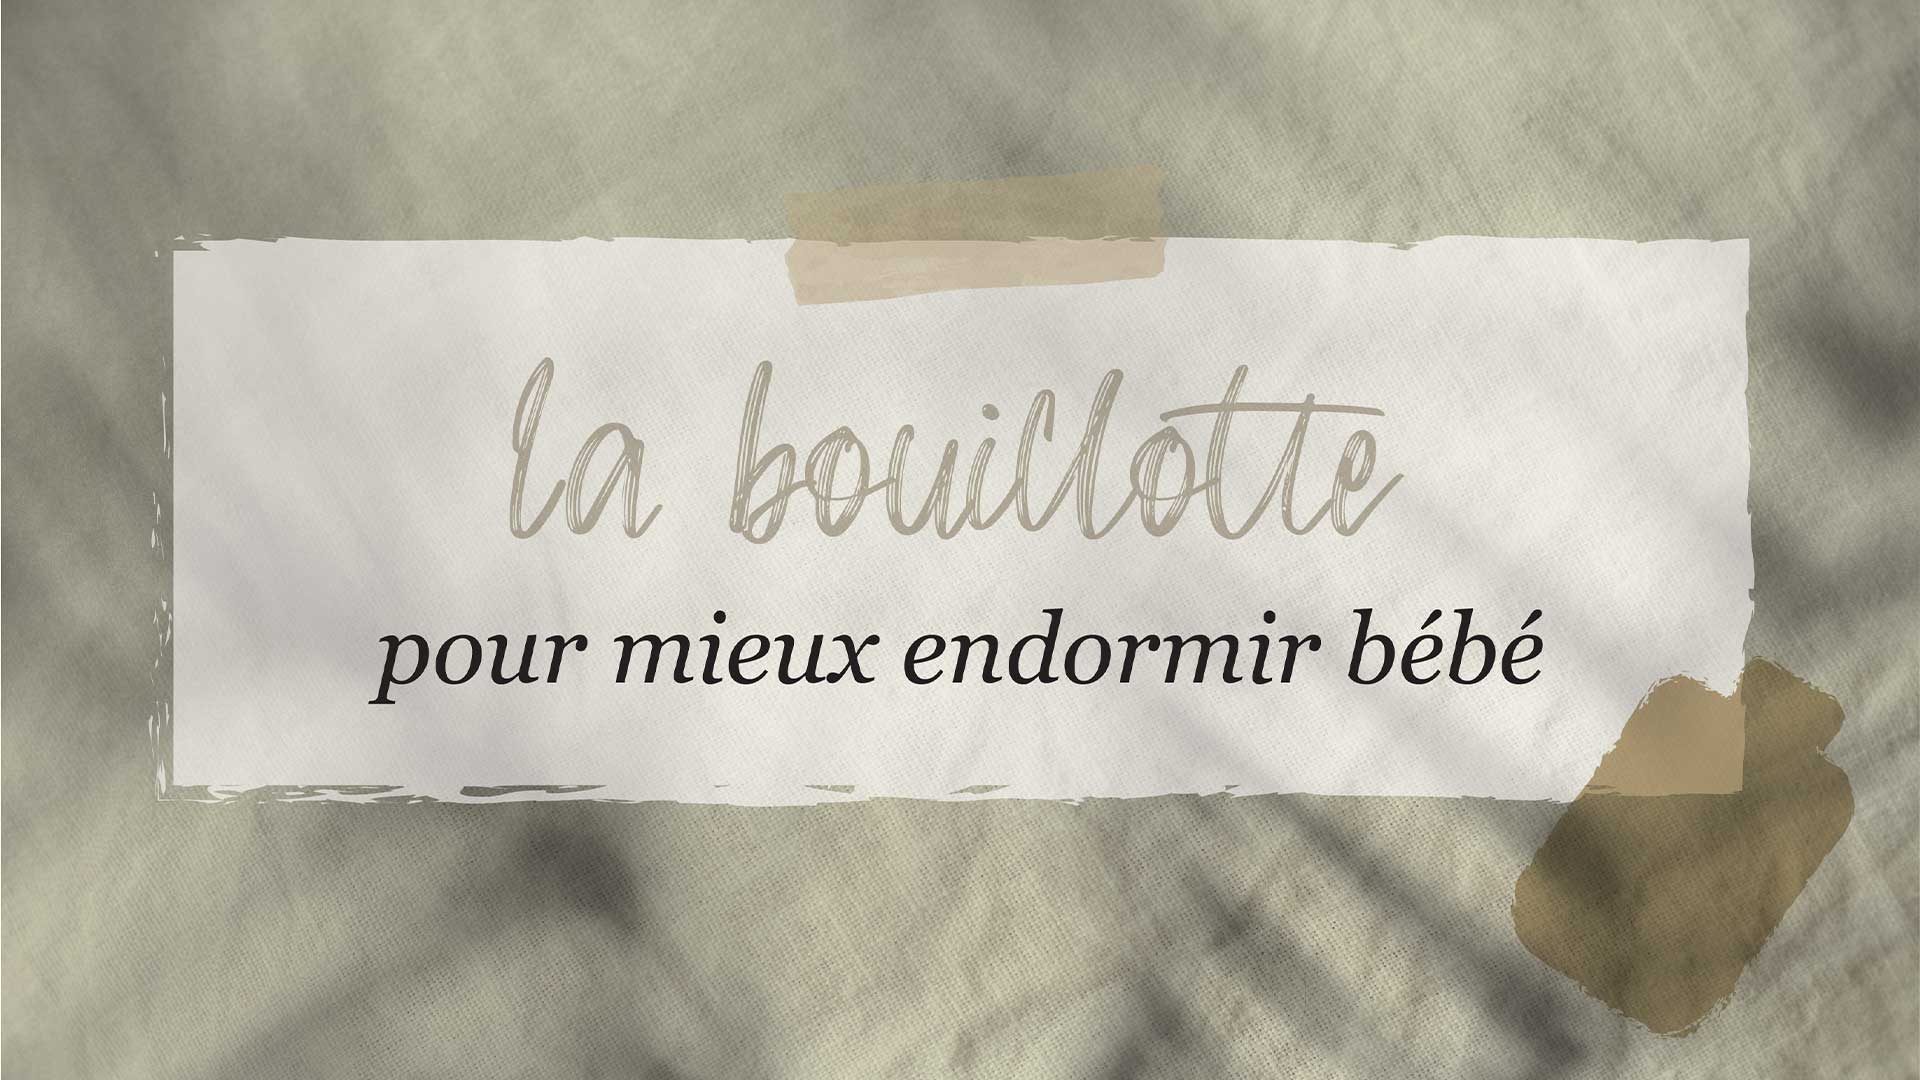 Quelle bouillotte bébé choisir ? - Douce Bouillotte, le blog